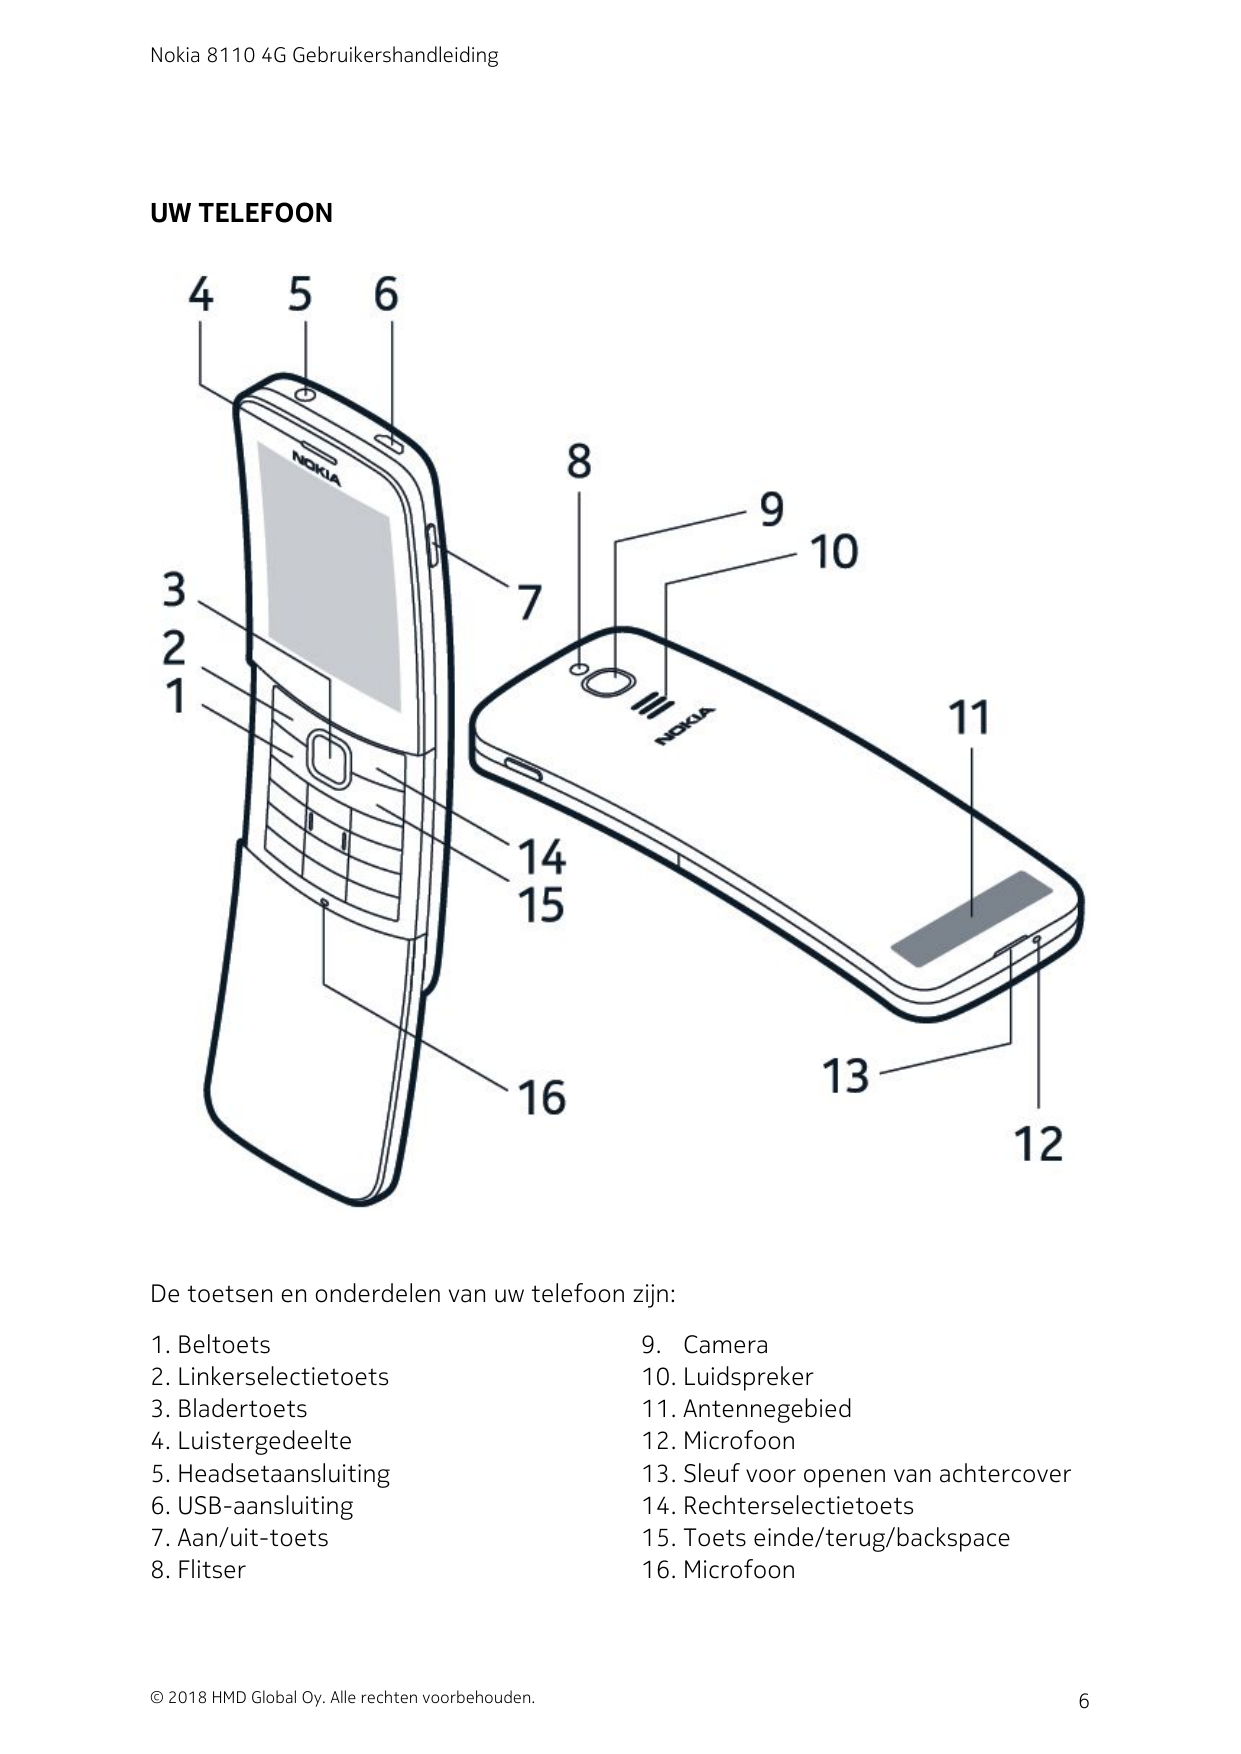 Nokia 8110 4G GebruikershandleidingUW TELEFOONDe toetsen en onderdelen van uw telefoon zijn:1. Beltoets2. Linkerselectietoets3. 